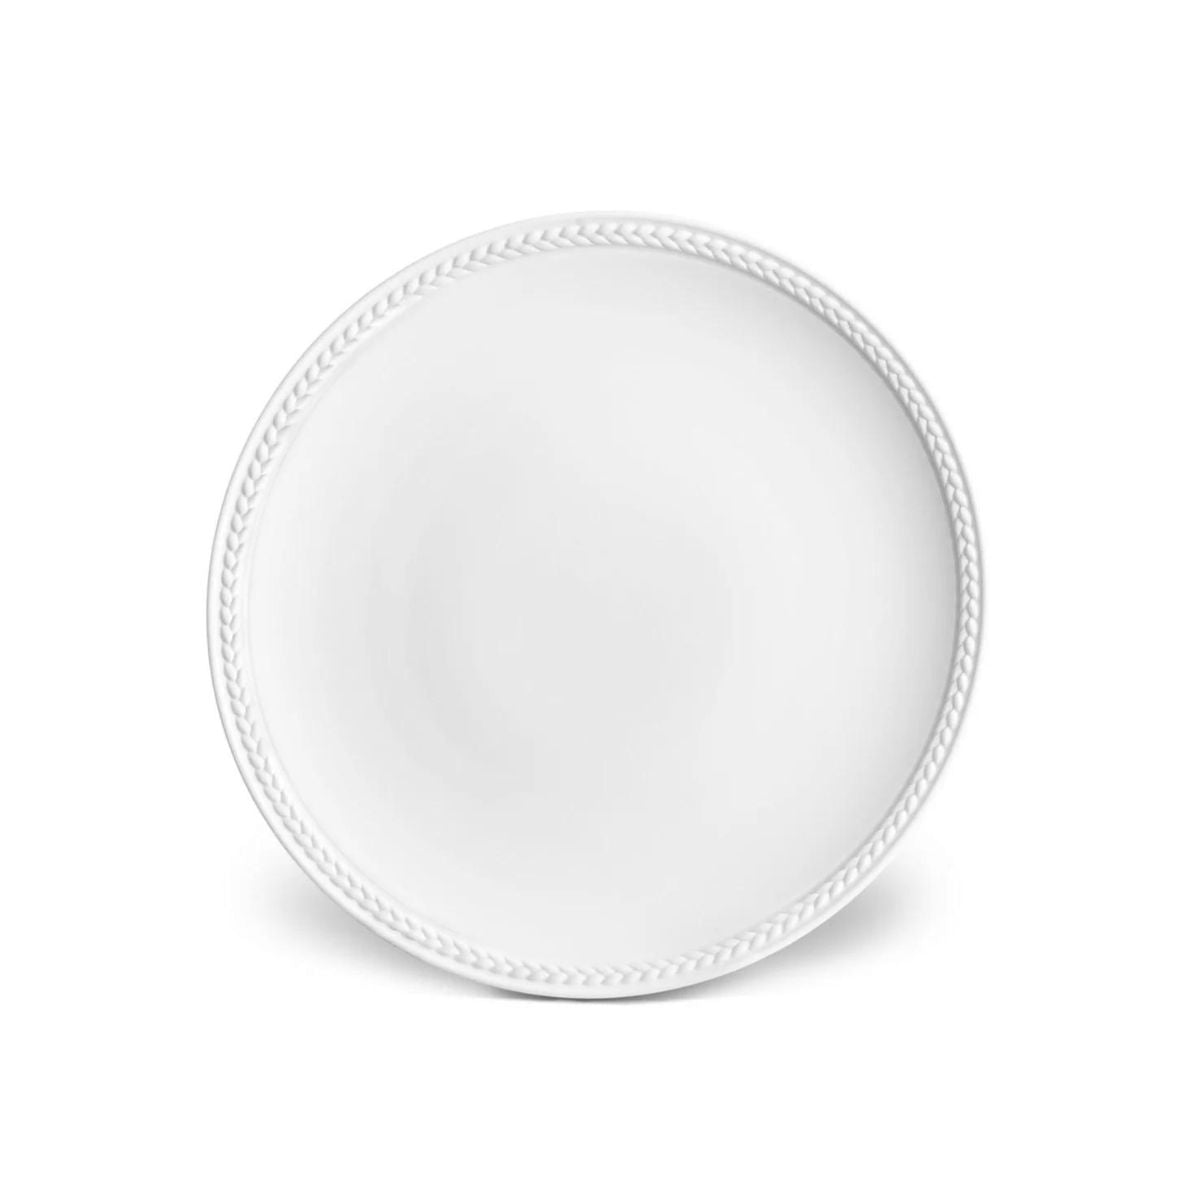 L'Objet Soie Tressee White Bread & Butter Plate-Bespoke Designs